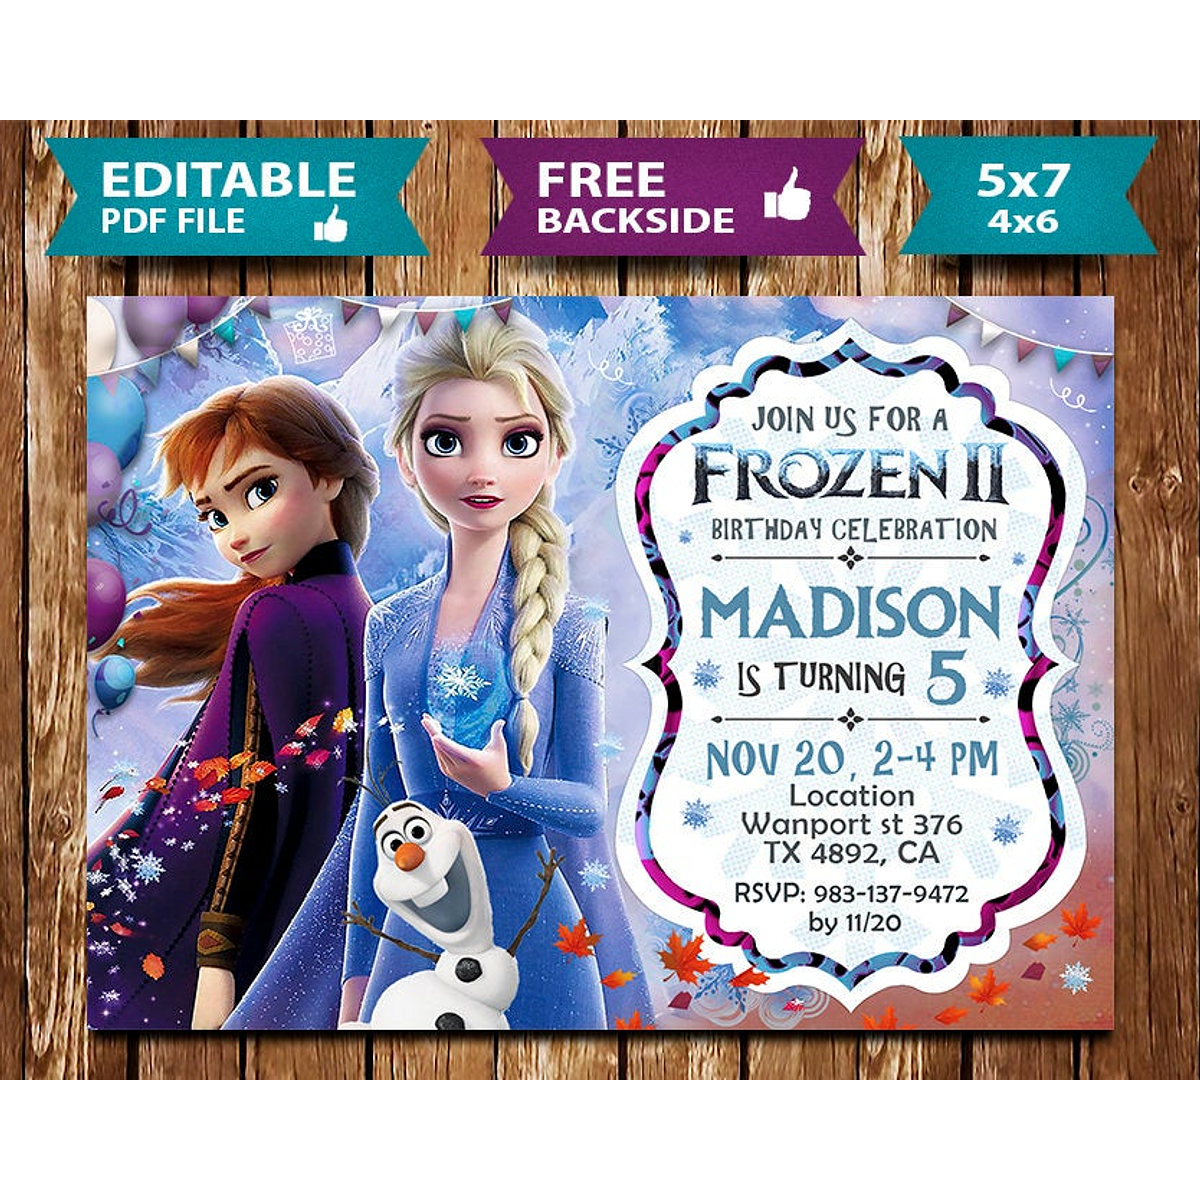 Convite Frozen Gratis Para Editar